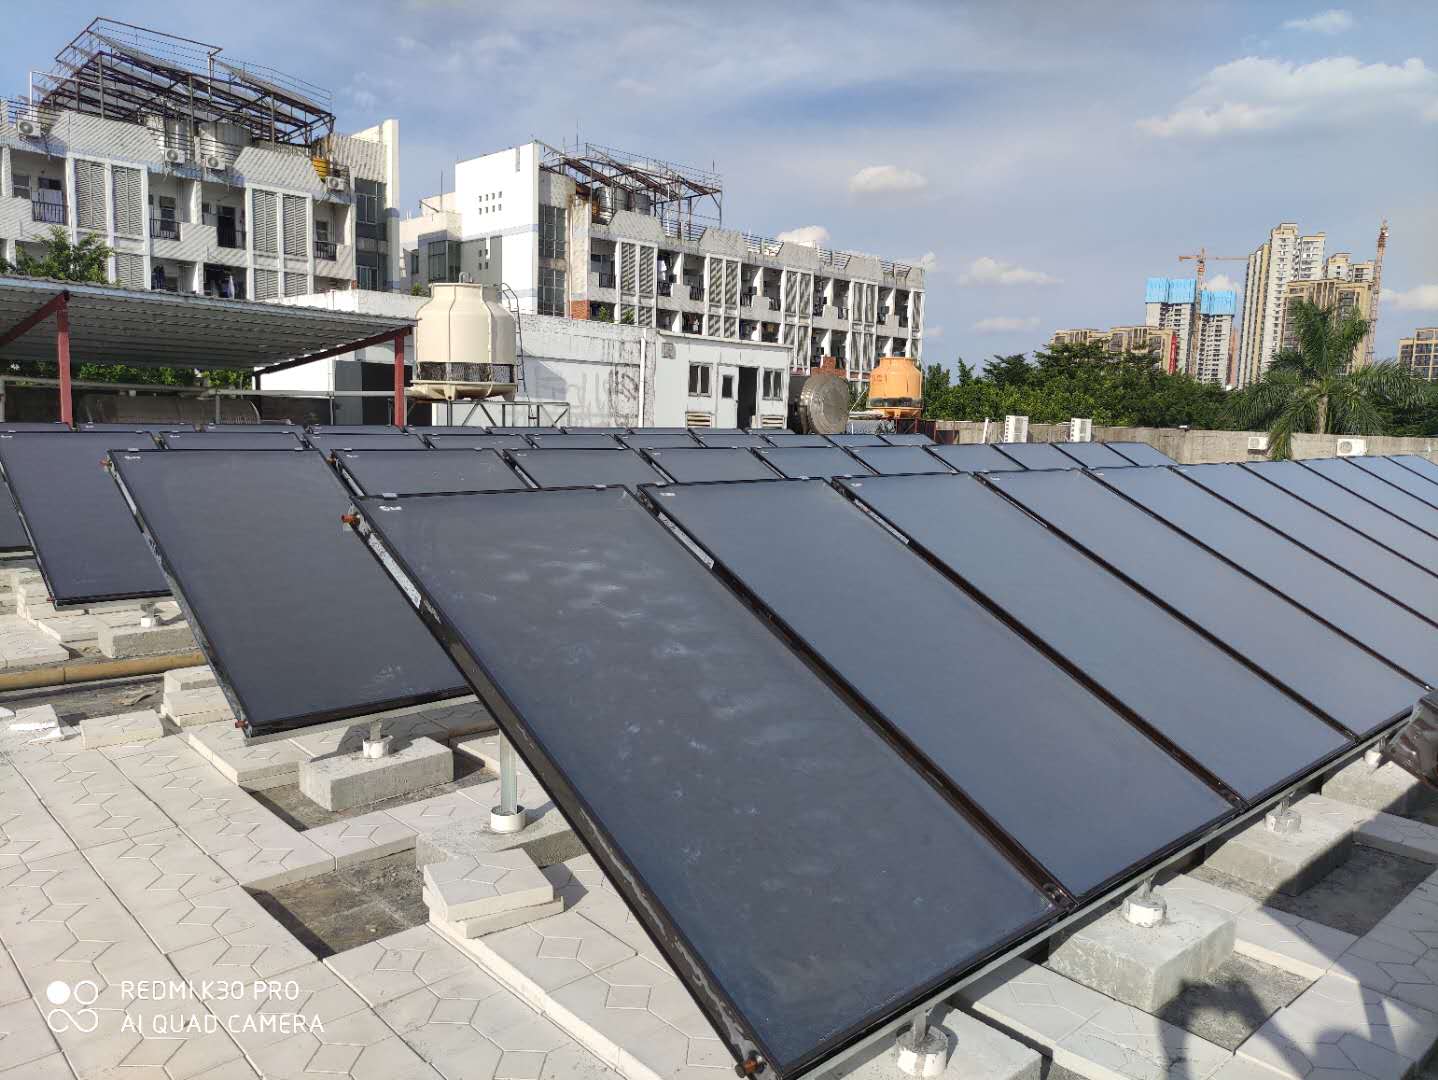 珠海大宇能源工厂宿舍楼赫派空气能辅助太阳能热水系统解决方案